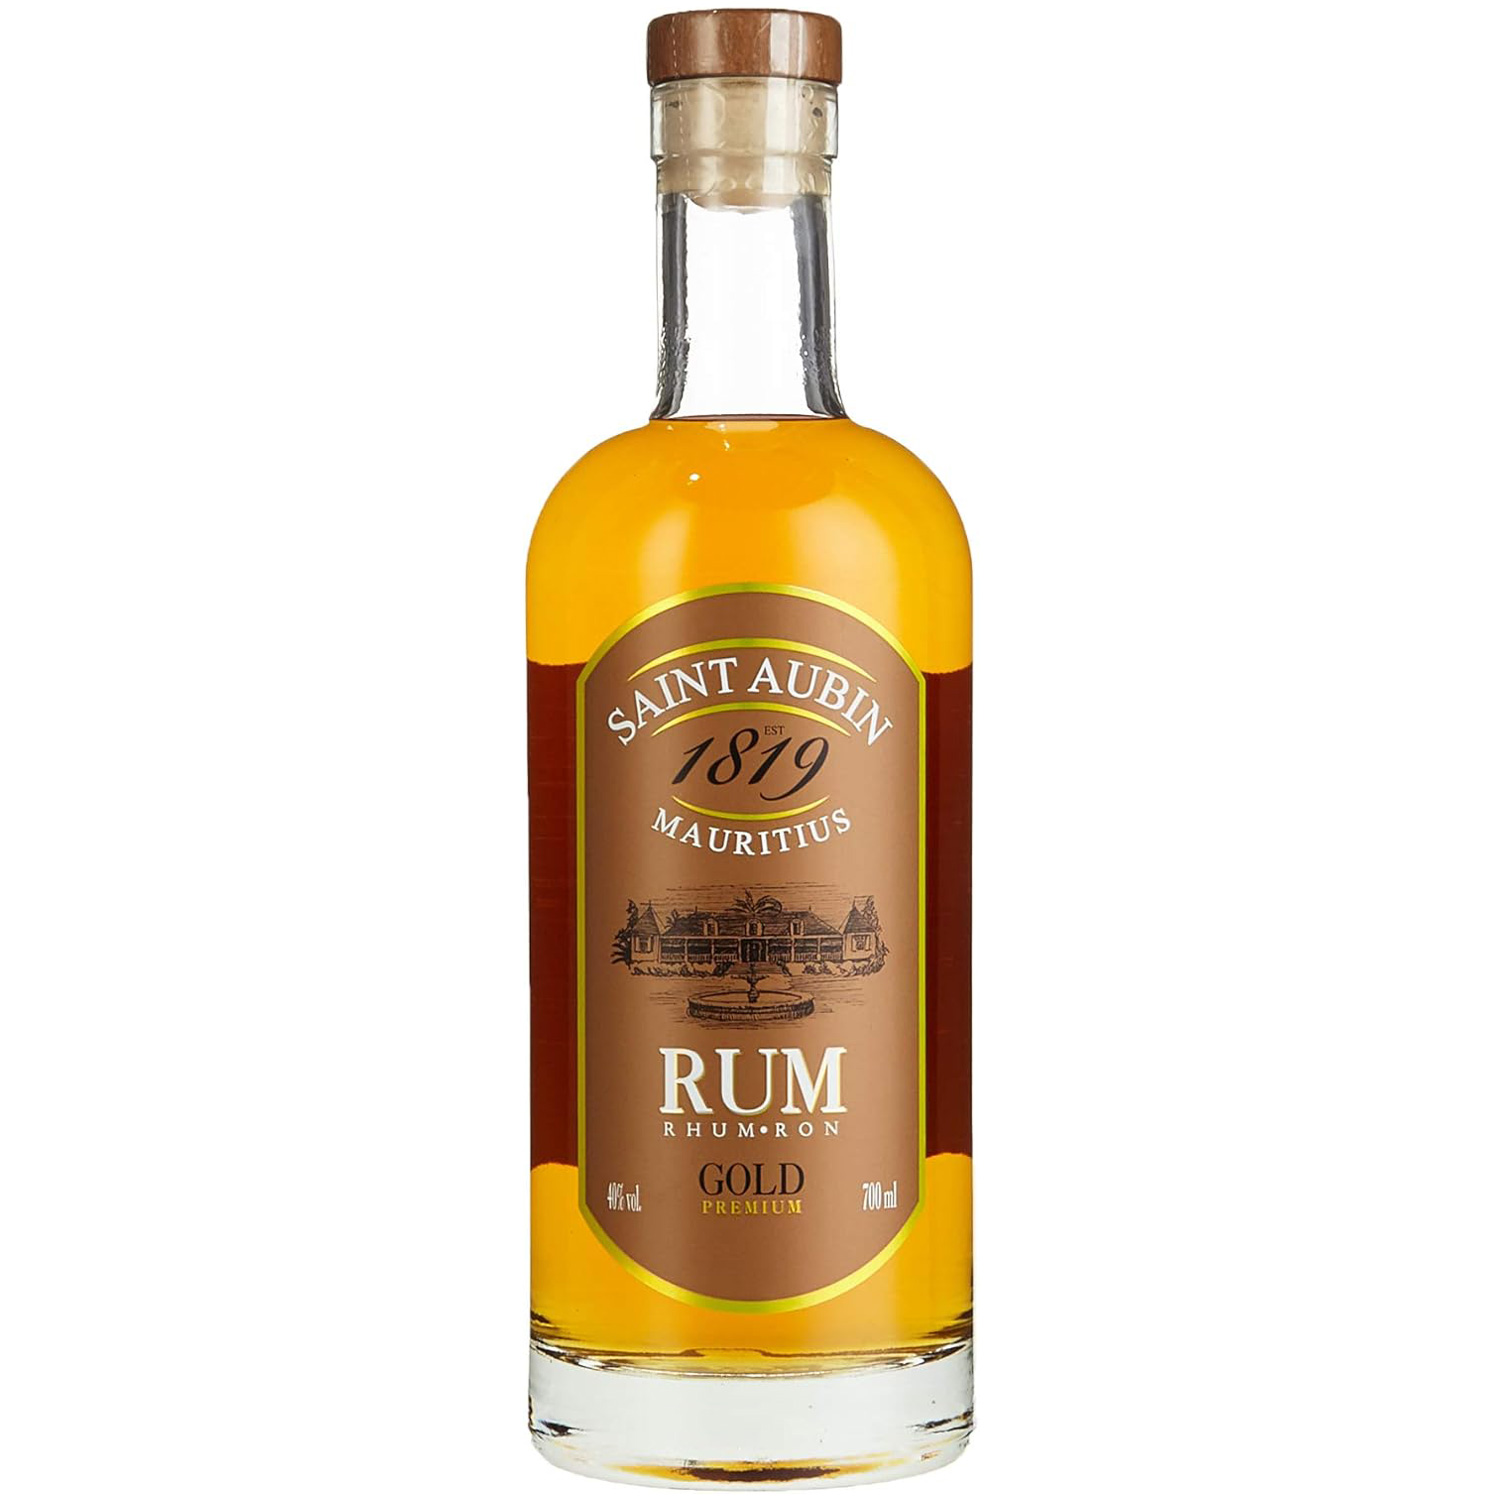 Saint Aubin Premium Gold Rum